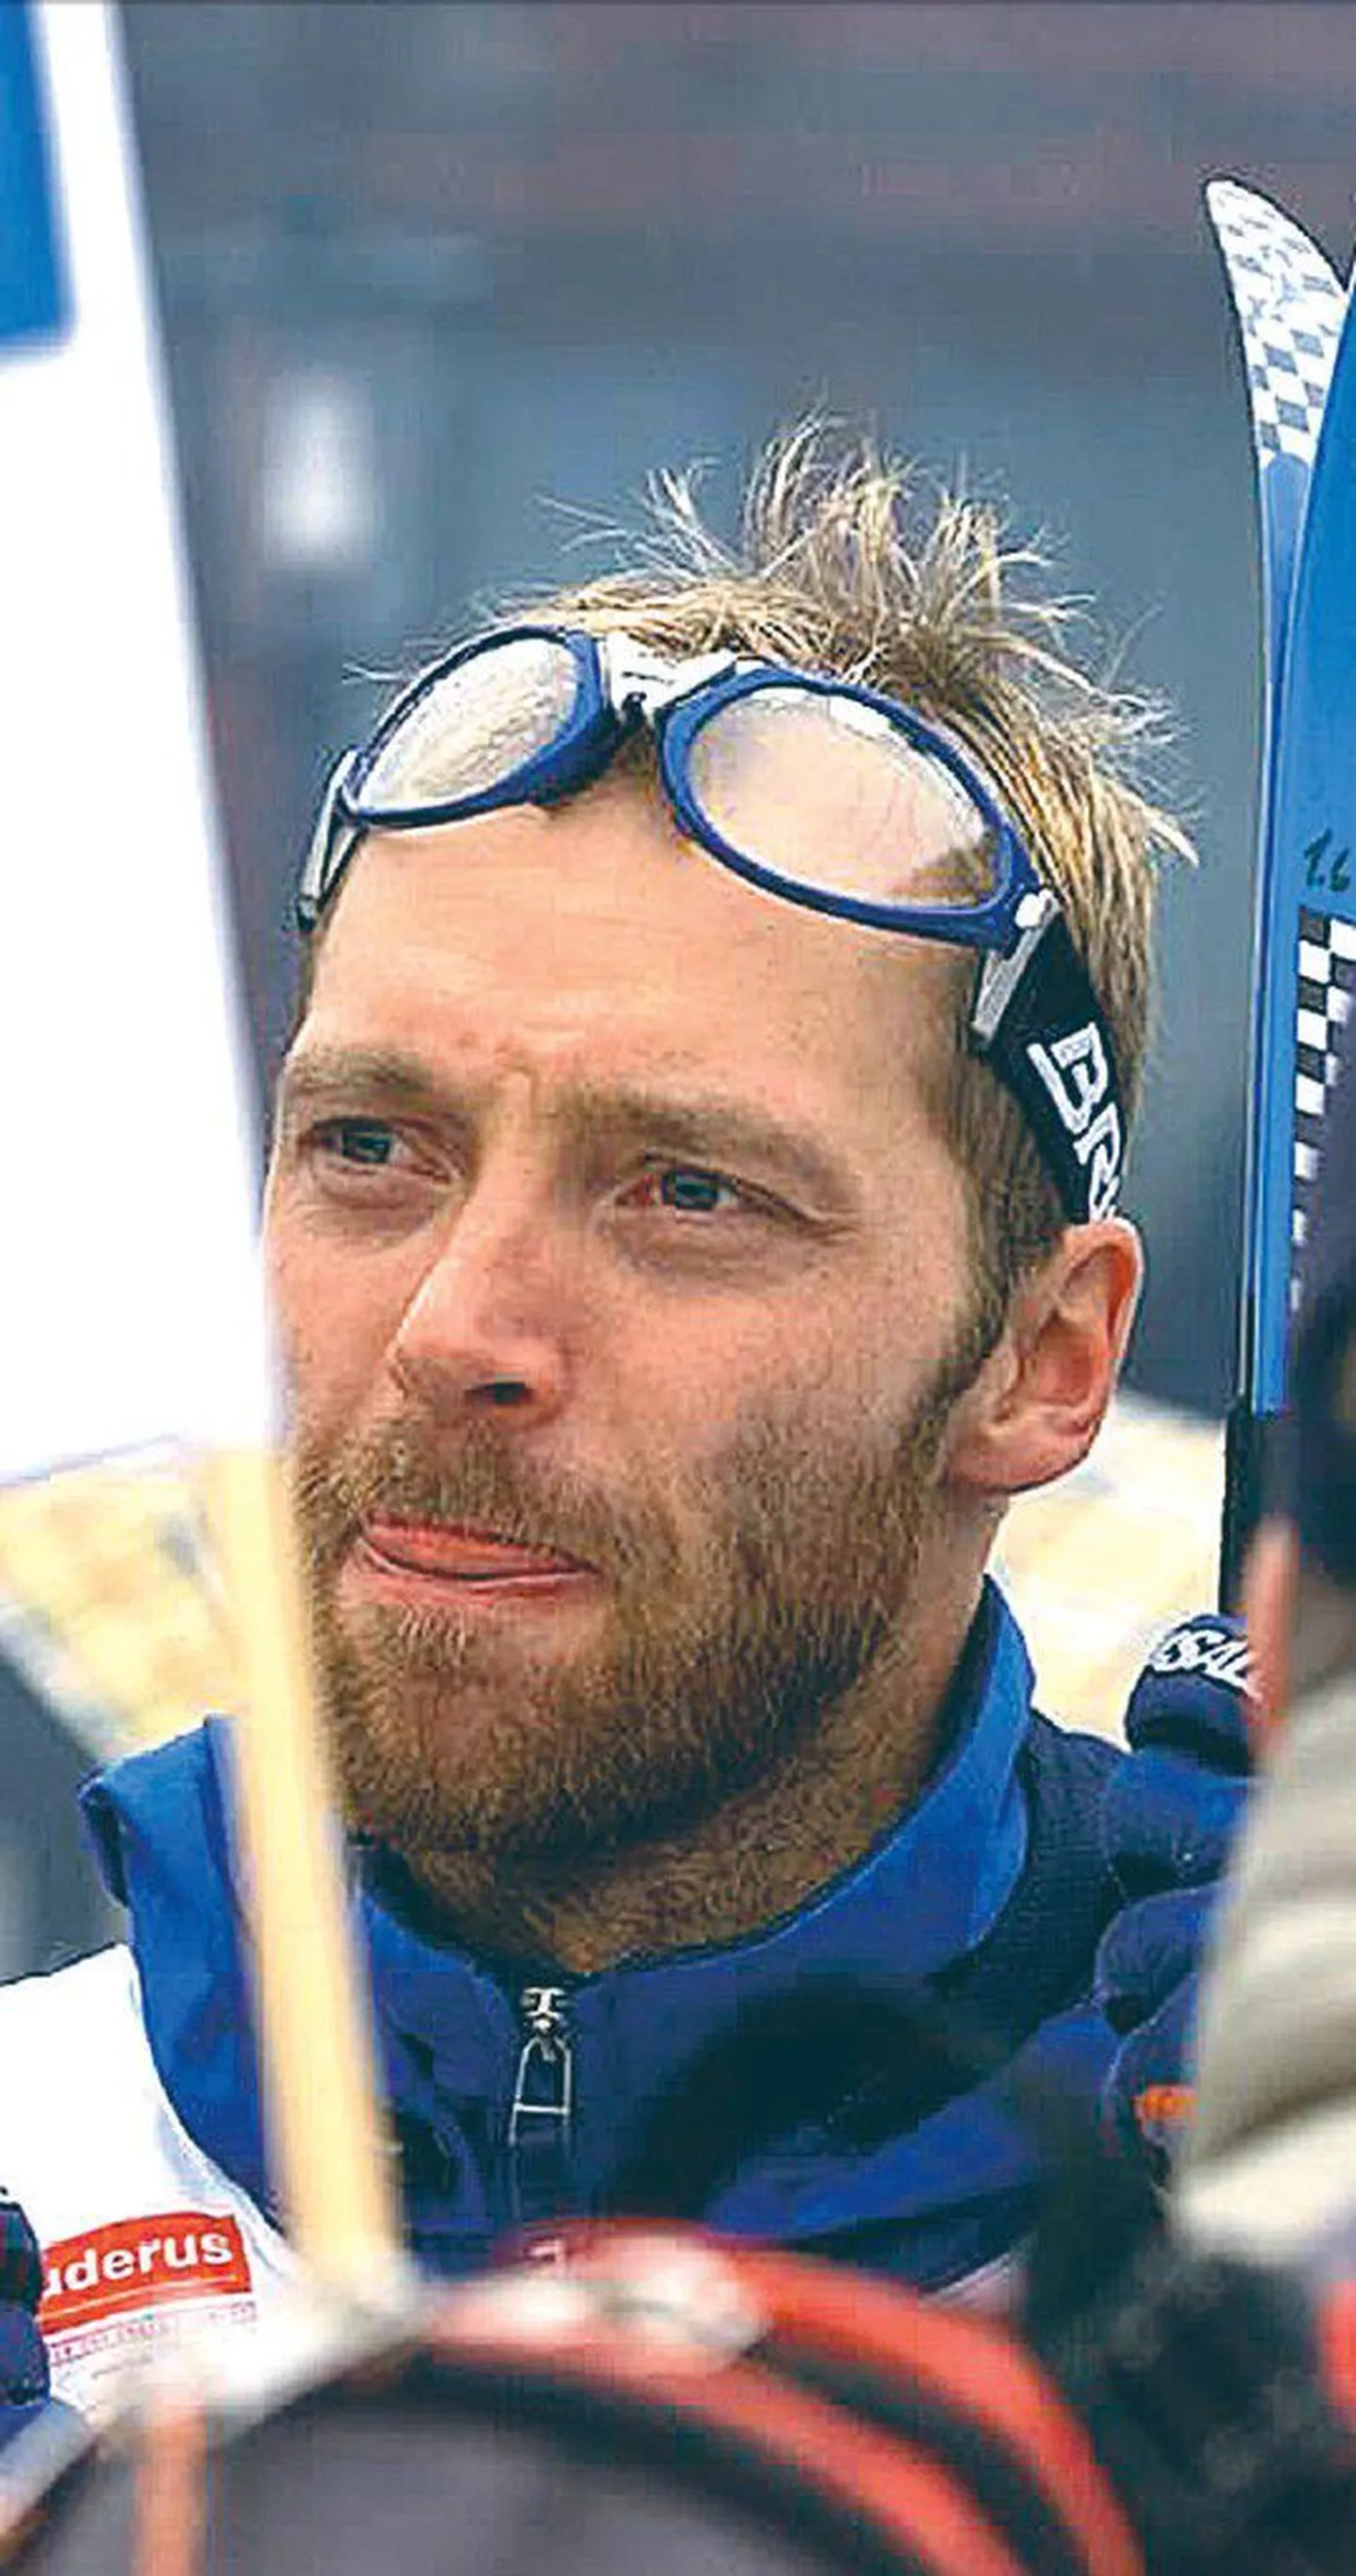 Mika Myllylä 2000. aasta detsembris MK-etapil Itaalias, kui elu oli veel ilus. Mõni kuu hiljem jäi ta Lahti MMil dopingutarvitamisega vahele ning sealt algas tema allakäik.